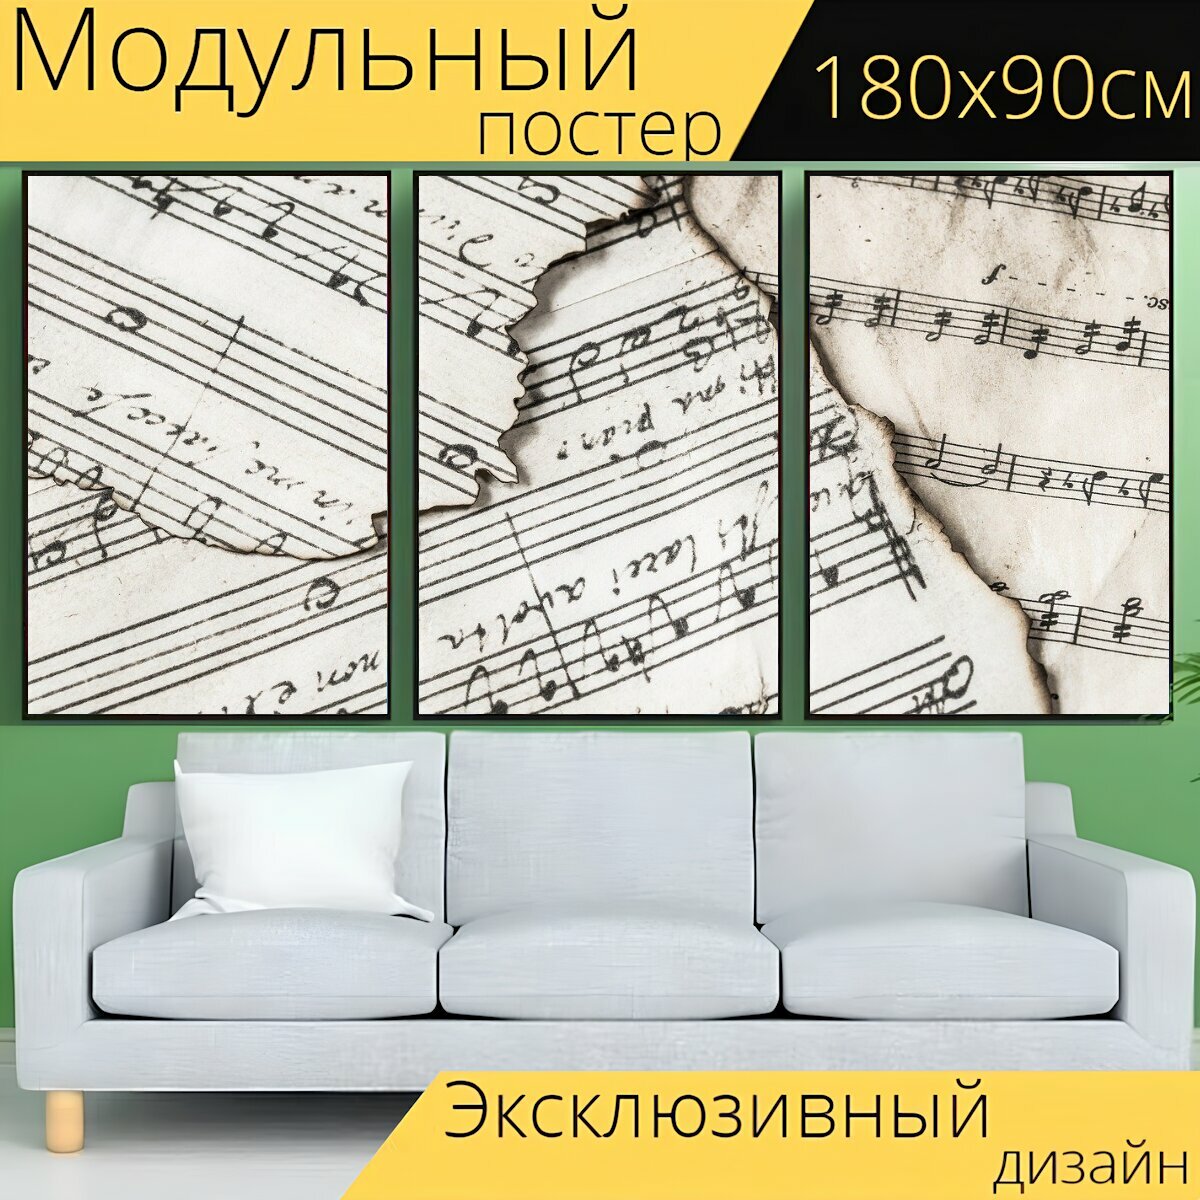 Модульный постер "Музыкальные ноты, музыка, мелодия" 180 x 90 см. для интерьера